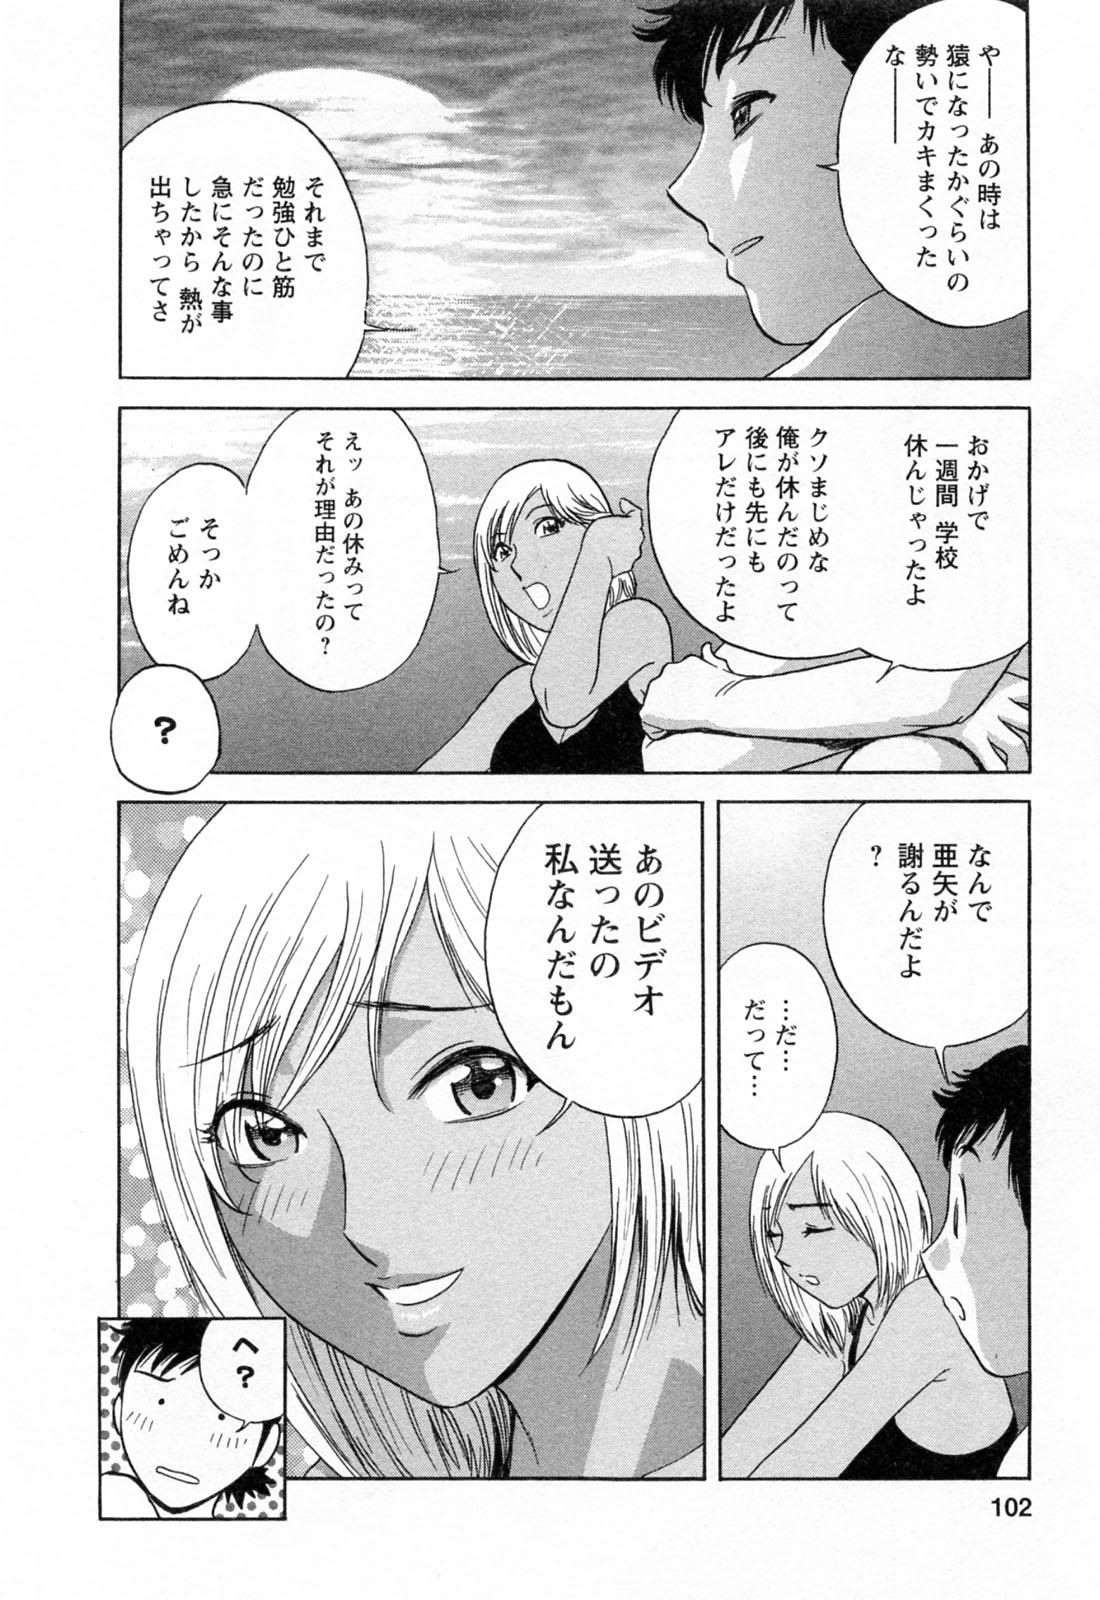 [Hidemaru] Mo-Retsu! Boin Sensei (Boing Boing Teacher) Vol.4 103